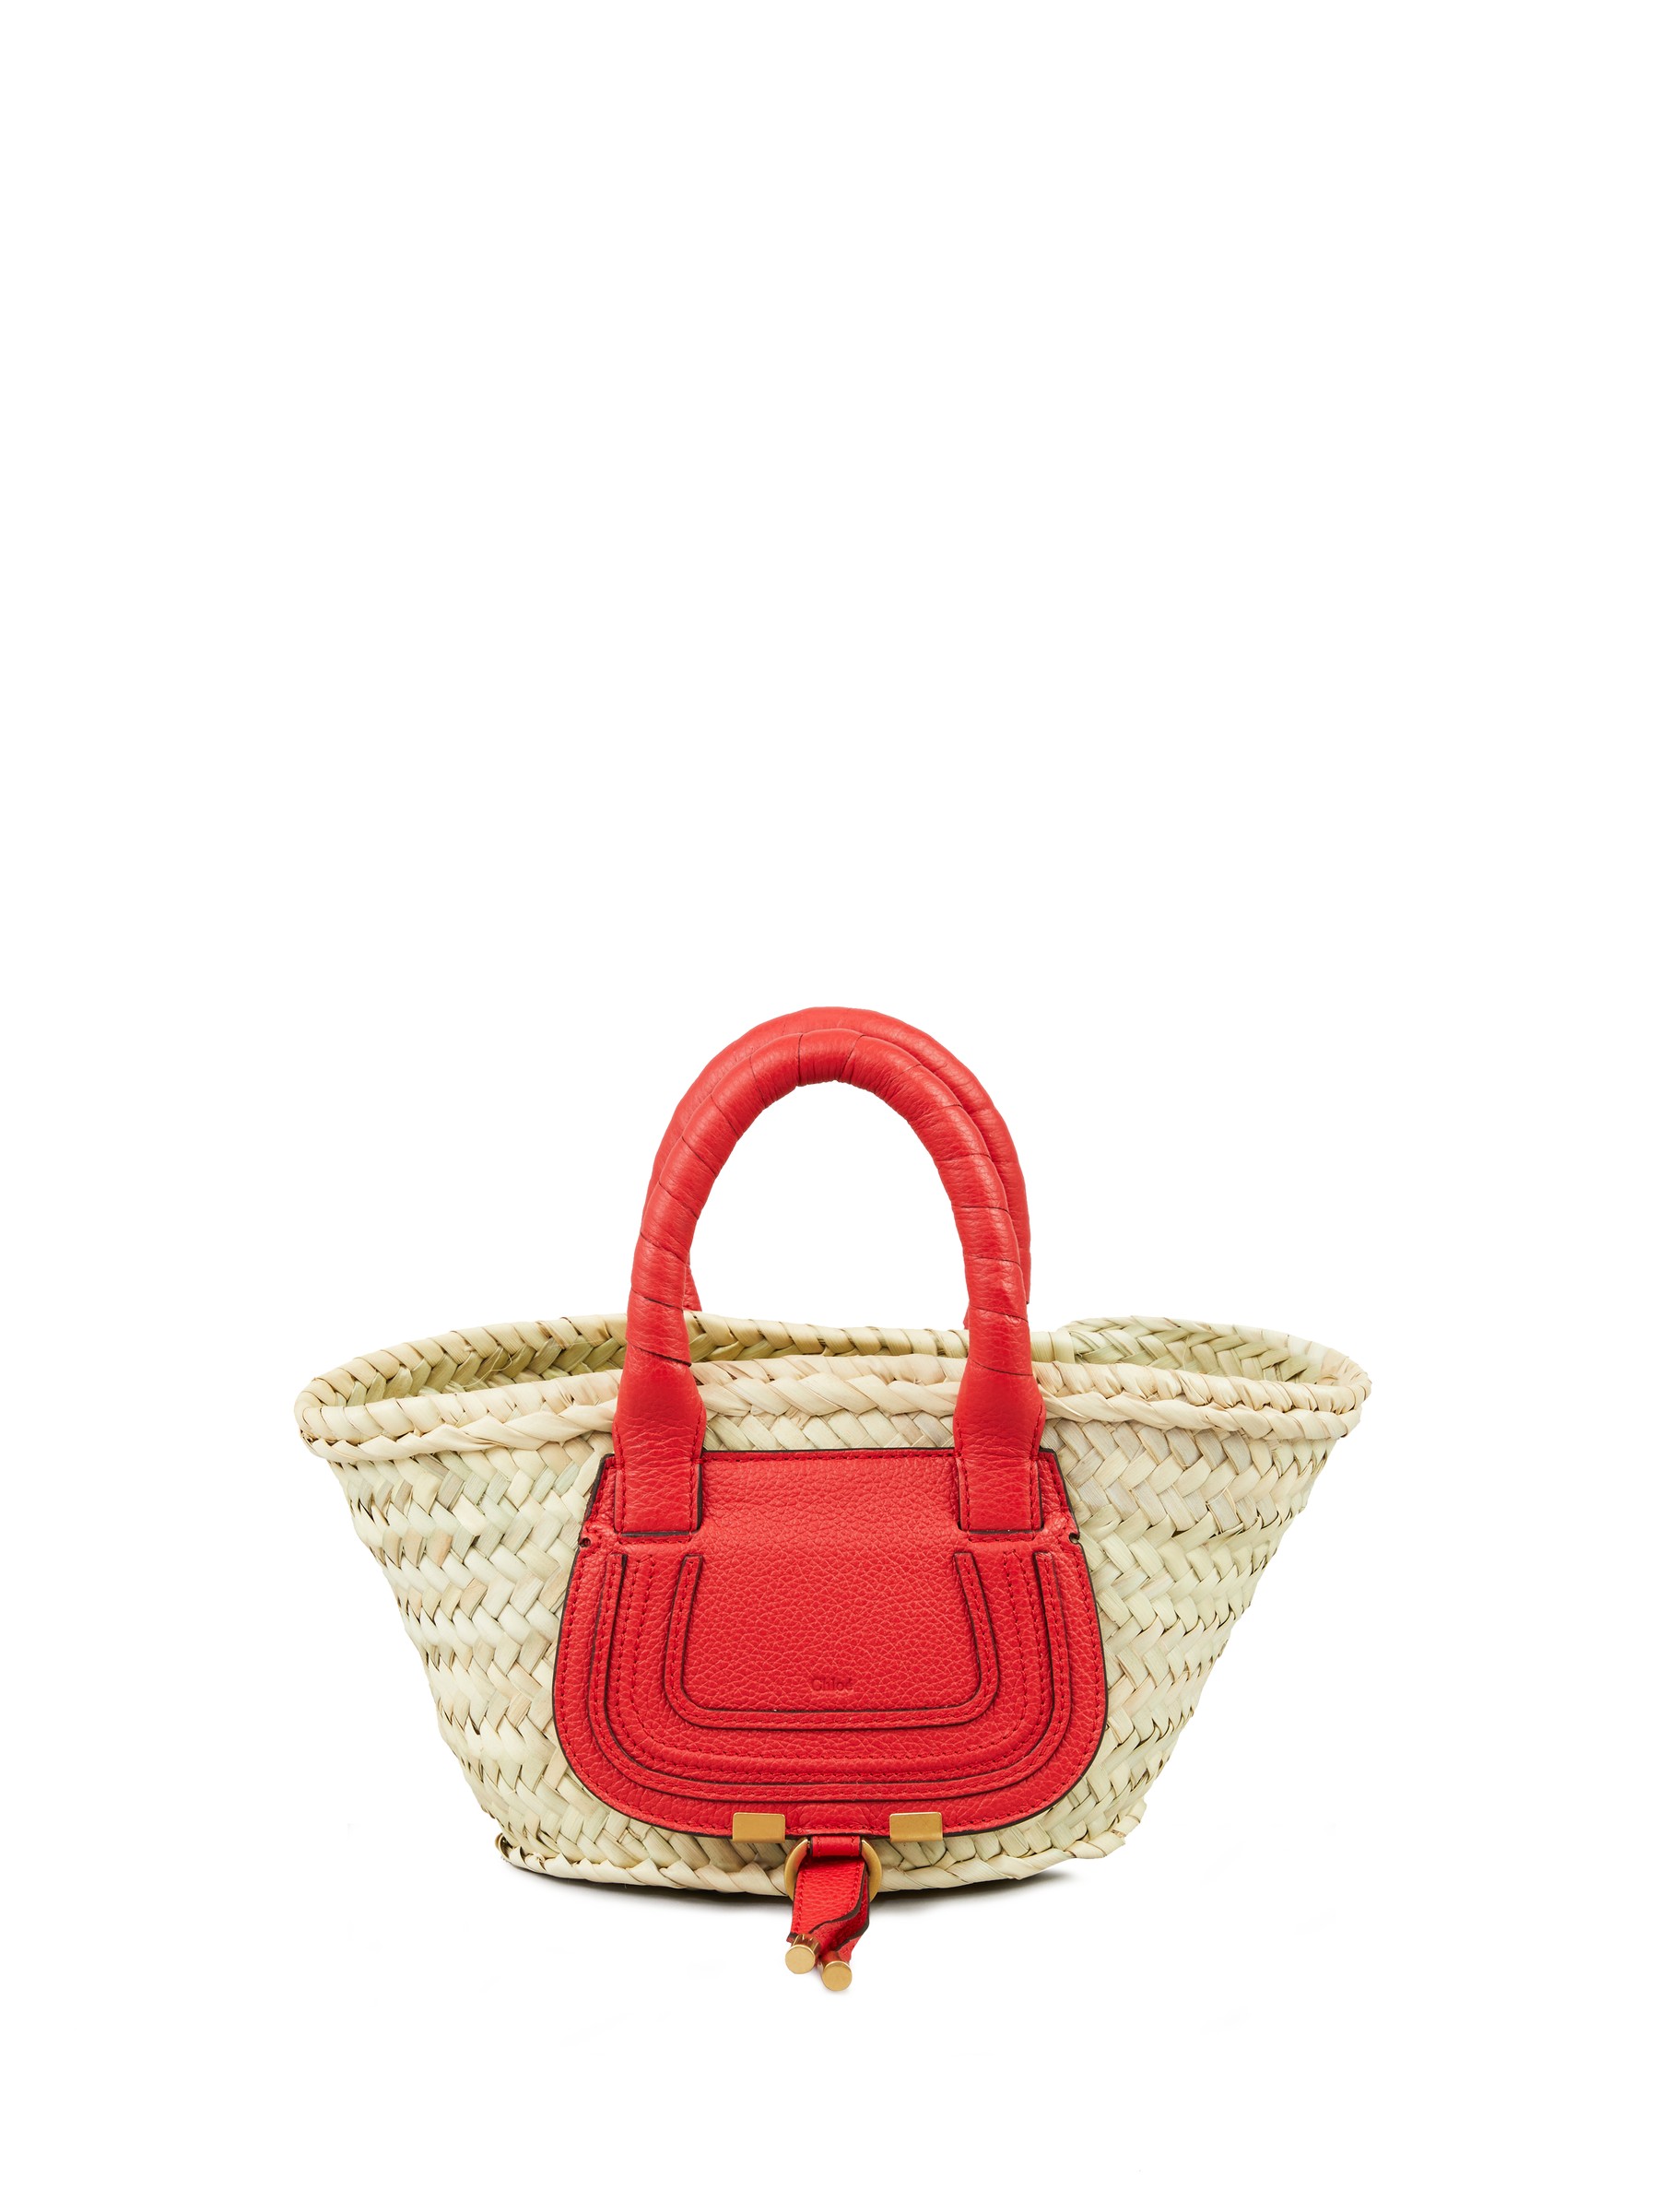 Damen Taschen Strand Chloé Handtasche Marcie Mini Red Flame und Strohtaschen 